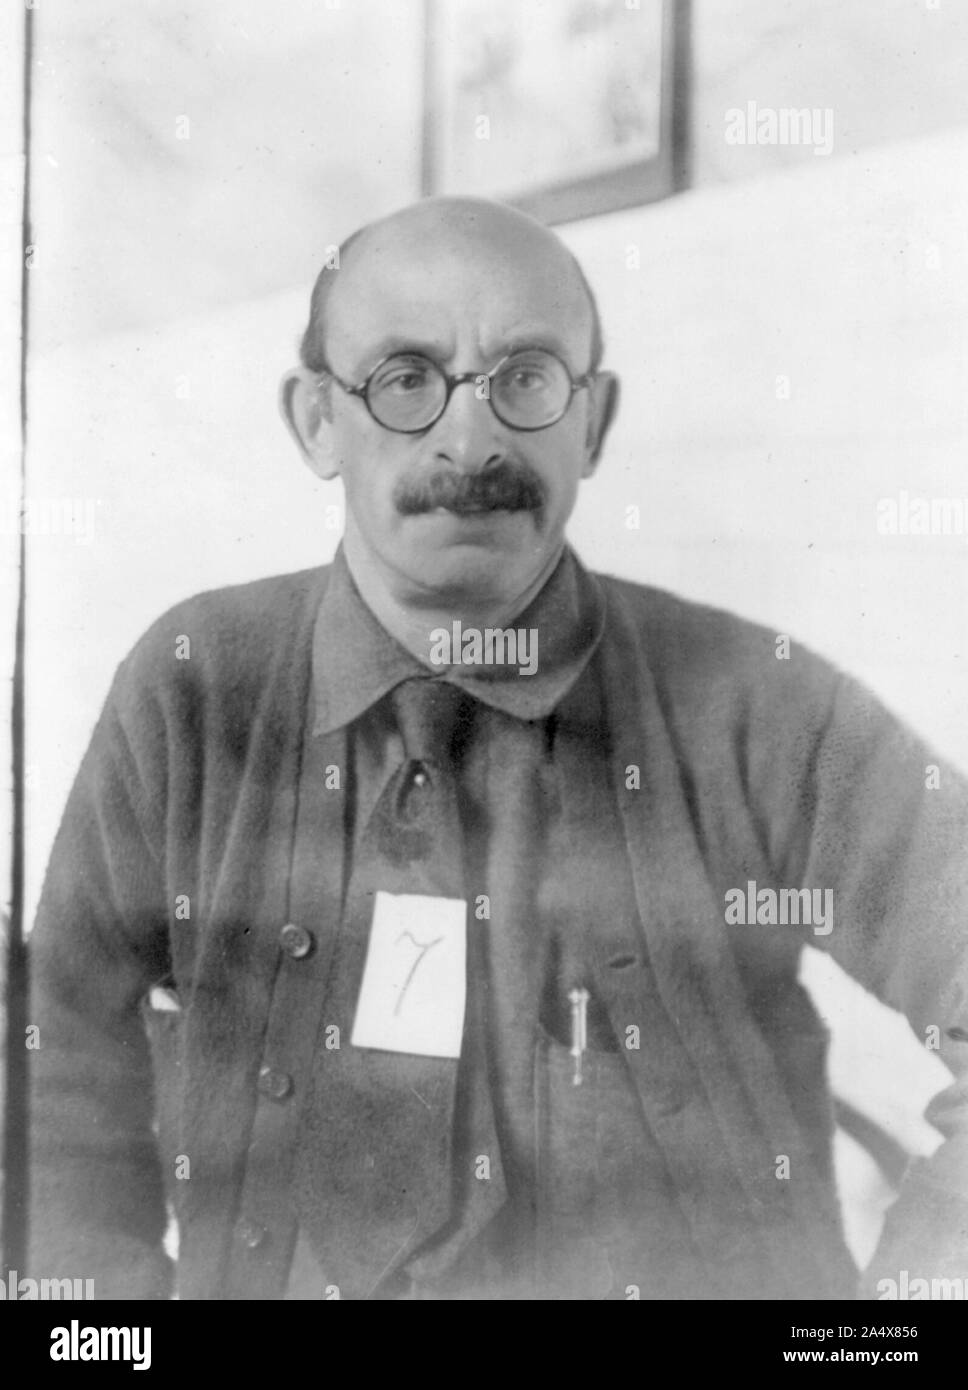 Alexander Berkman (1870 - 1936), Federación de activista político que fue un destacado miembro del movimiento anarquista. Fotografiado en 1919, en vísperas de su deportación Foto de stock